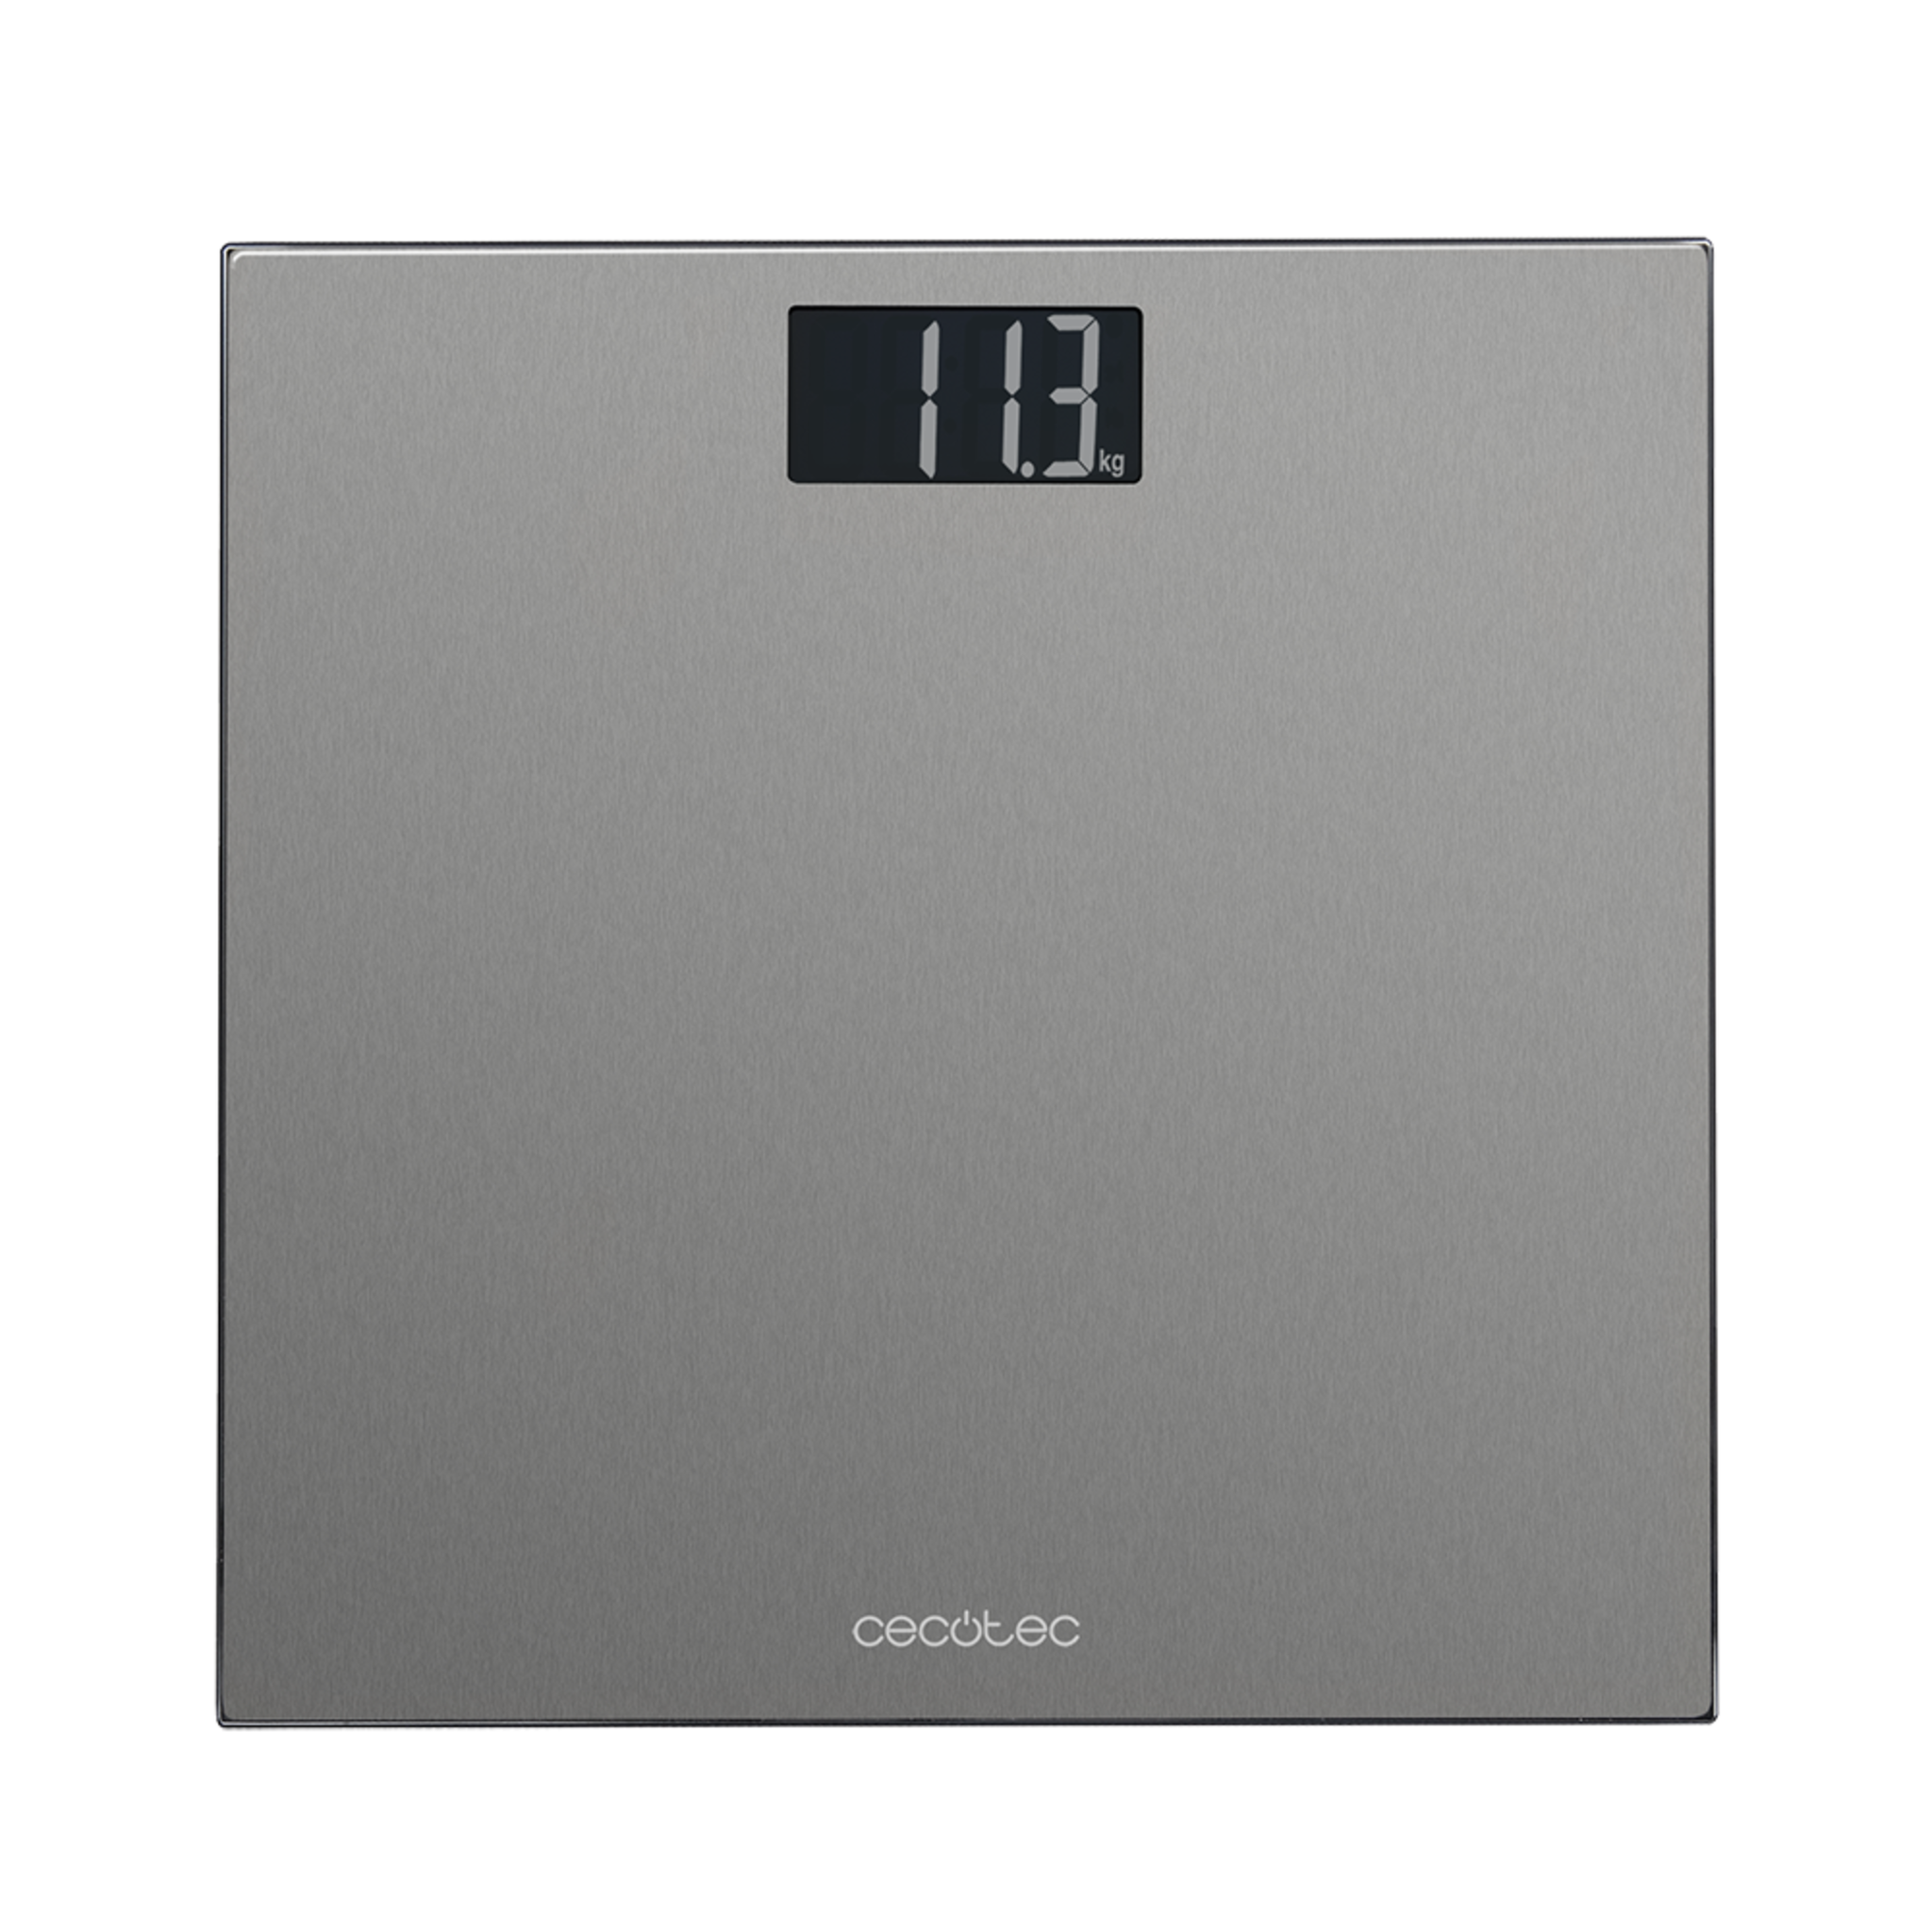 Pèse-personne numérique Surface Precision 9200 Healthy avec plateforme en acier inoxydable de haute précision, ruban à mesurer, écran LCD inversé et poids maximal jusqu’à 180 kg.